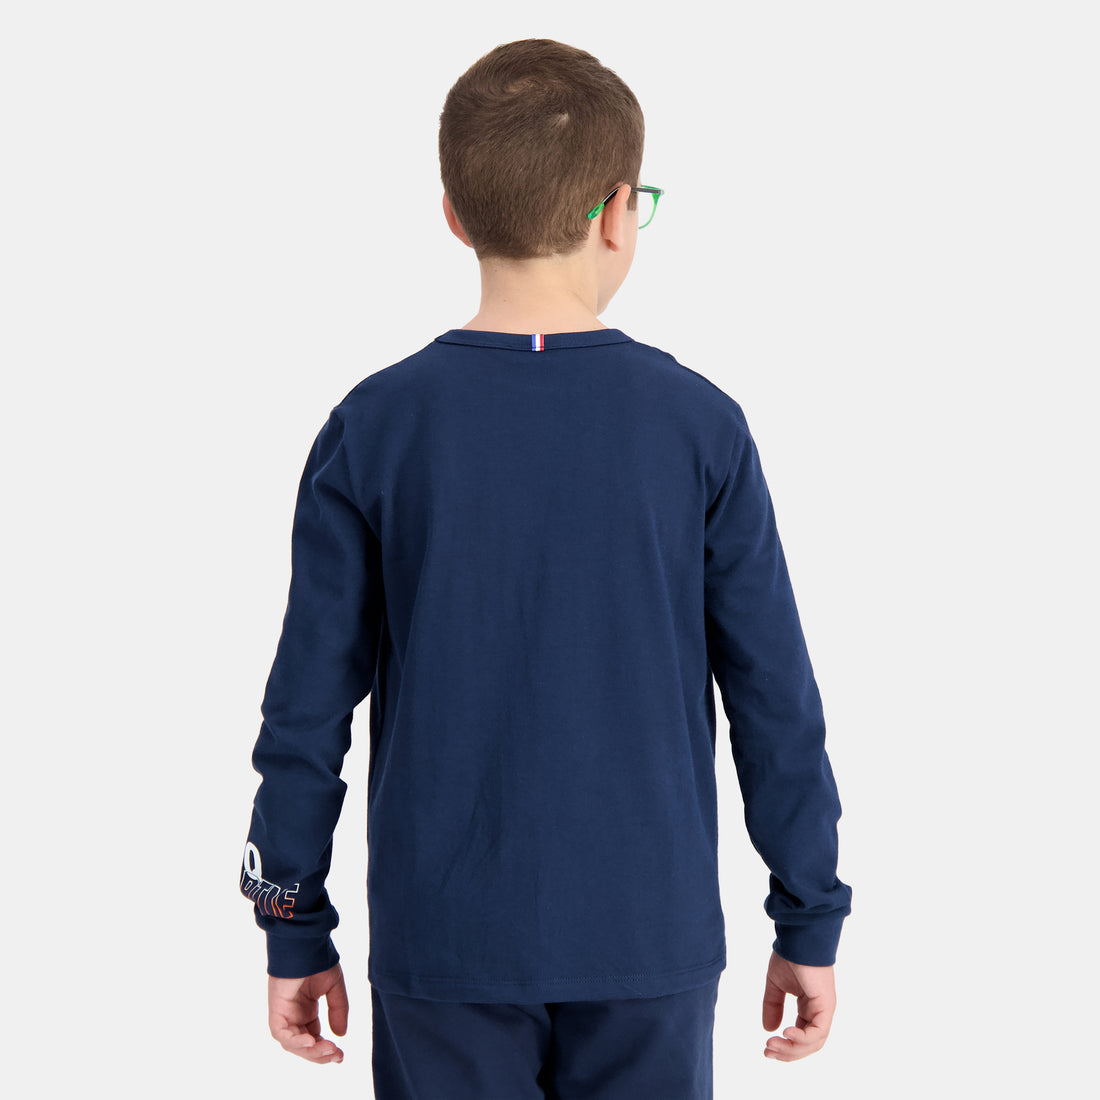 2410130-SAISON 2 Tee LS N°1 Enfant dress blues | T-shirt manches longues Enfant